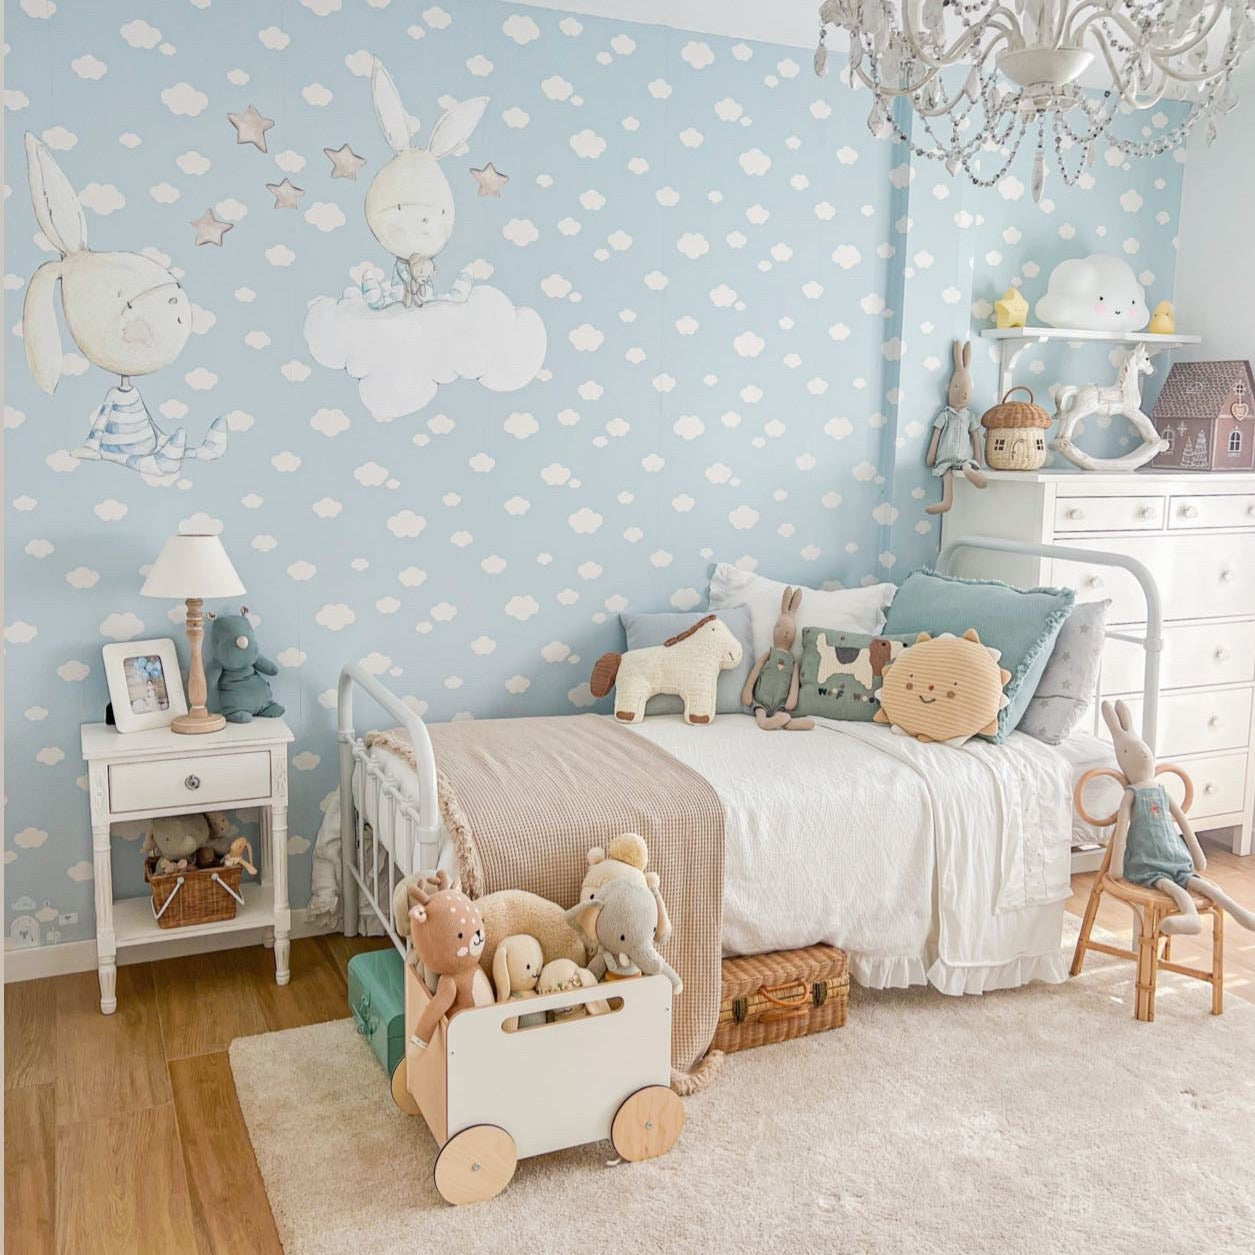 Vinilo Decorativo Infantil BLUE DREAMS instalado en el dormitorio